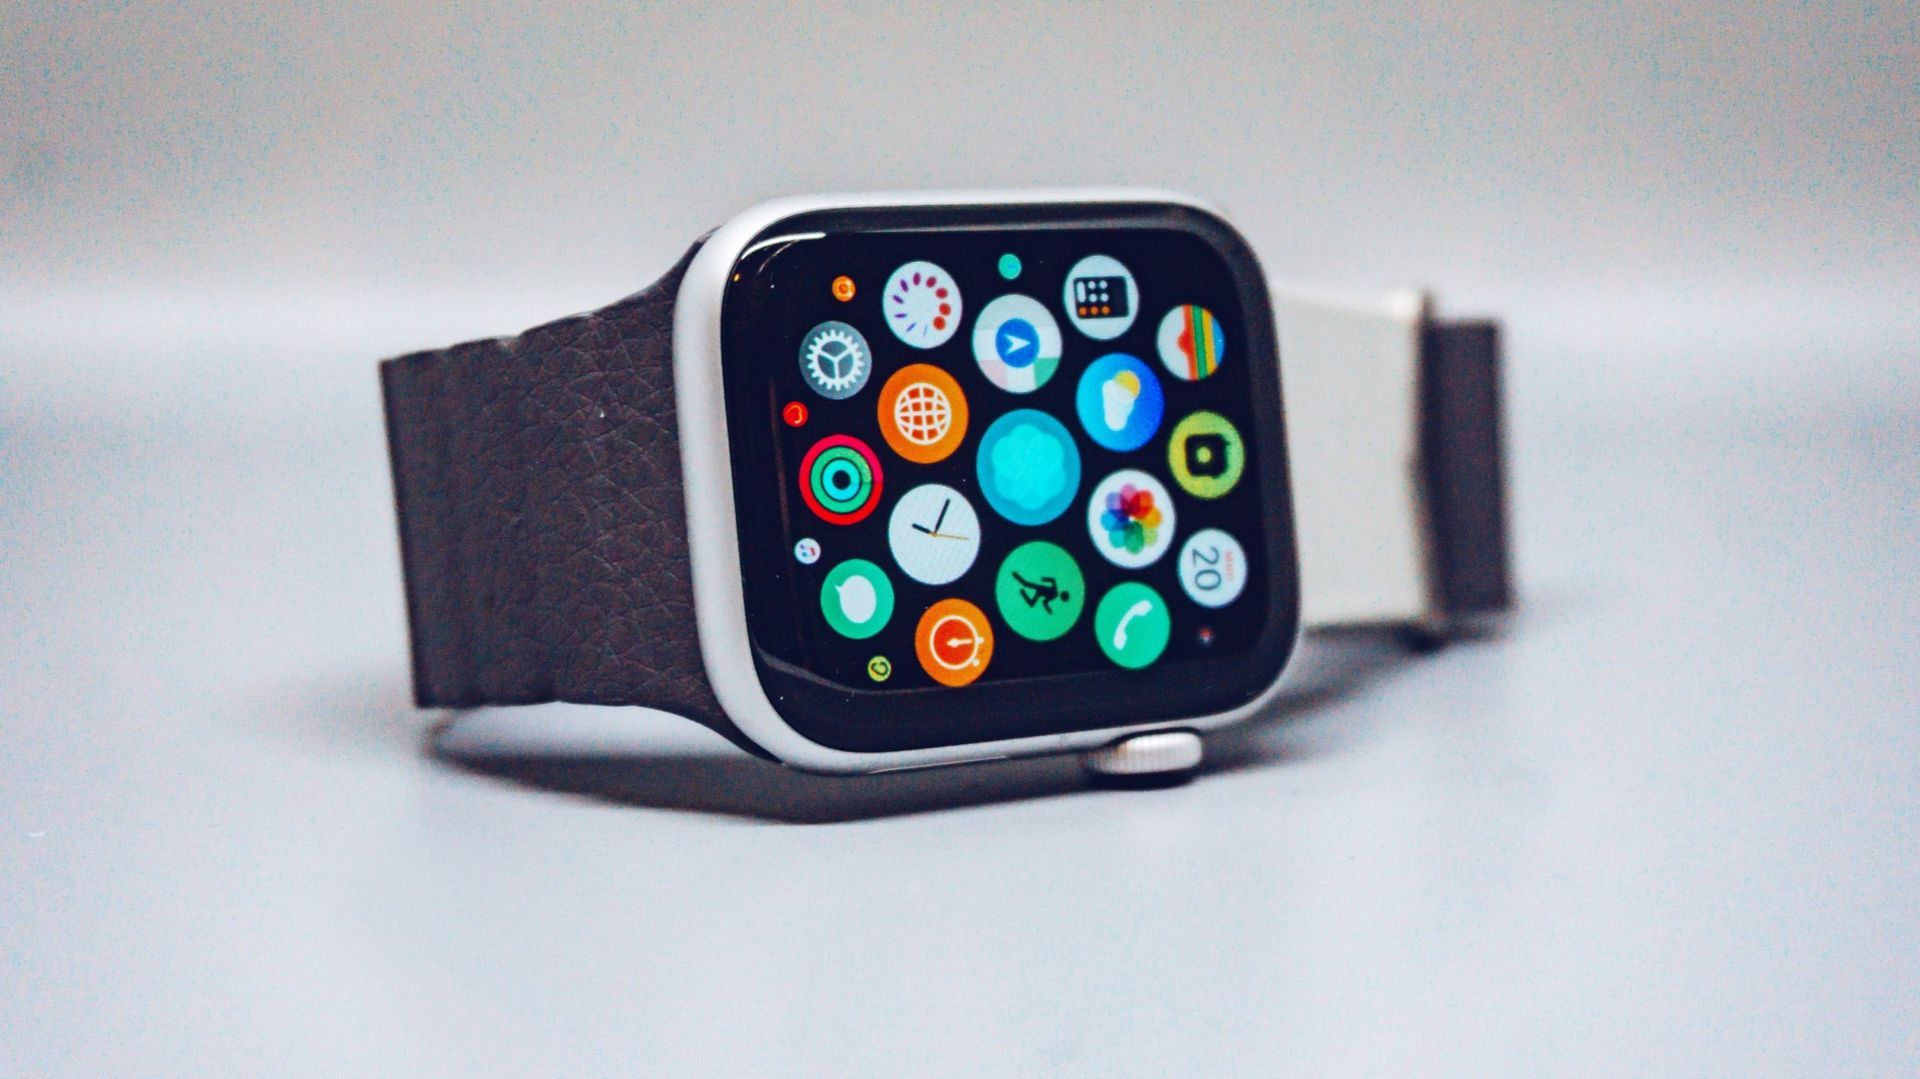 Comment changer le bracelet de son Apple Watch et pour pas cher? 